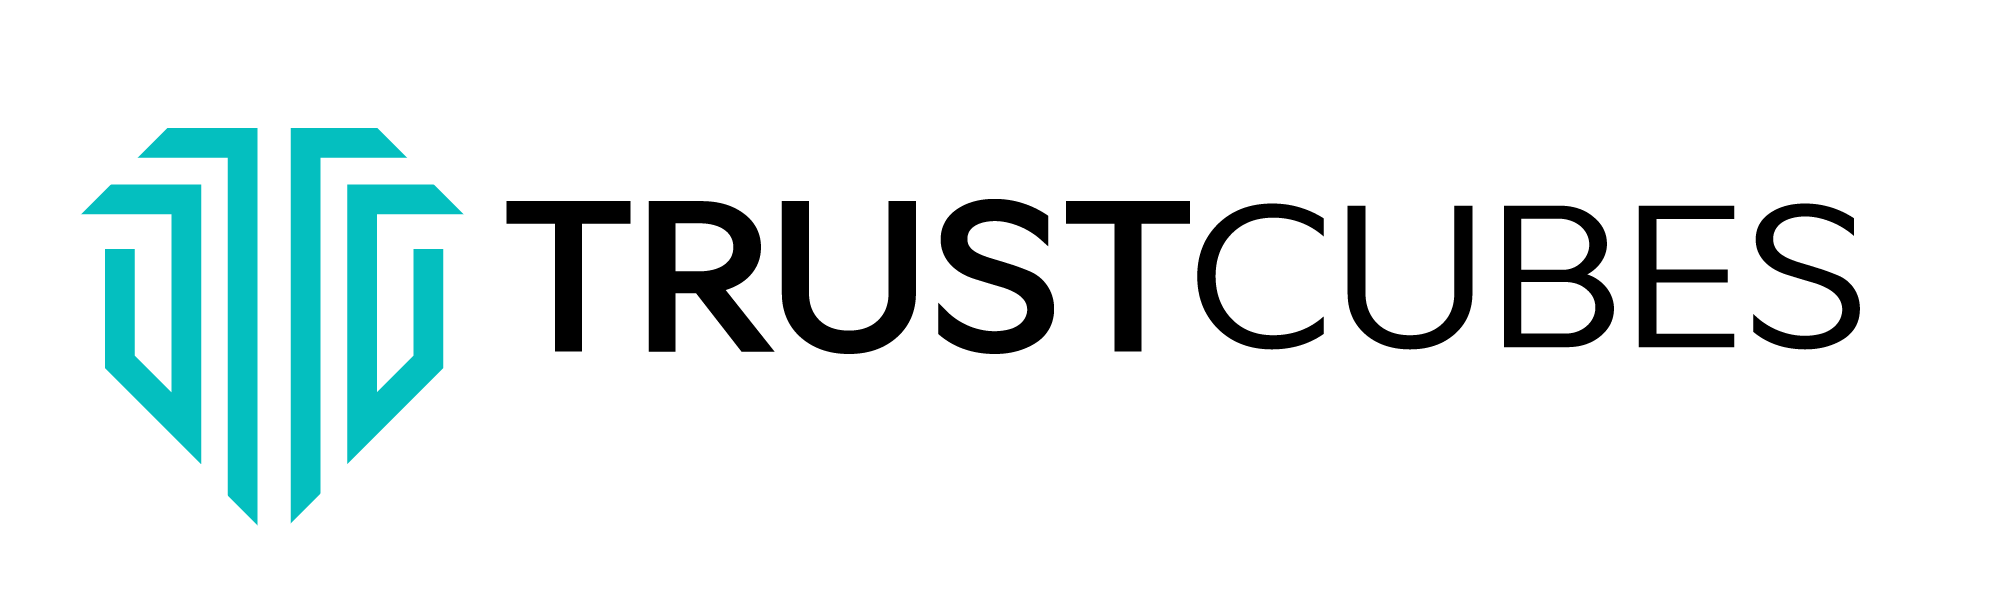 Trustcubes Logo White